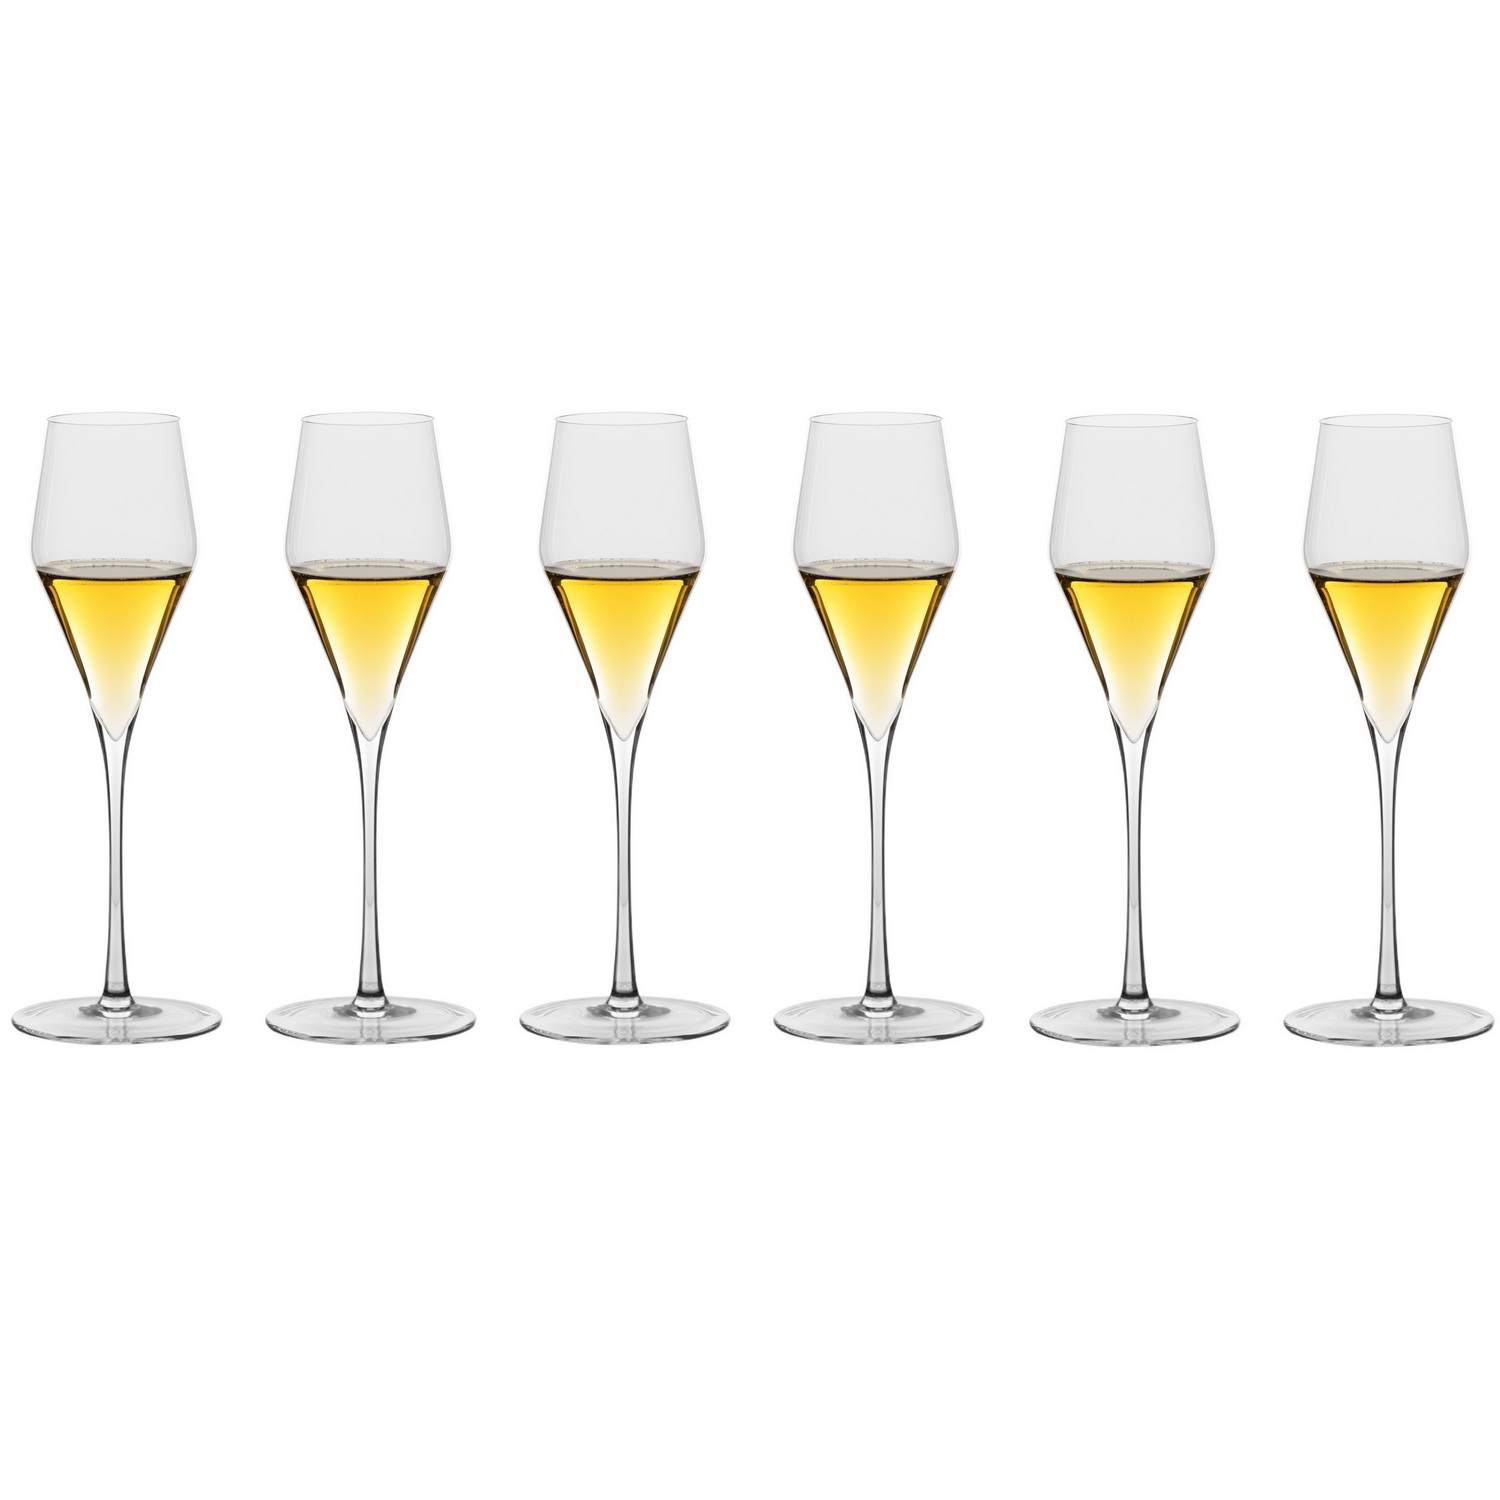 6 бокалов для игристых вин Sophienwald Phoenix Sparkling 220 мл (арт. Sw1003)